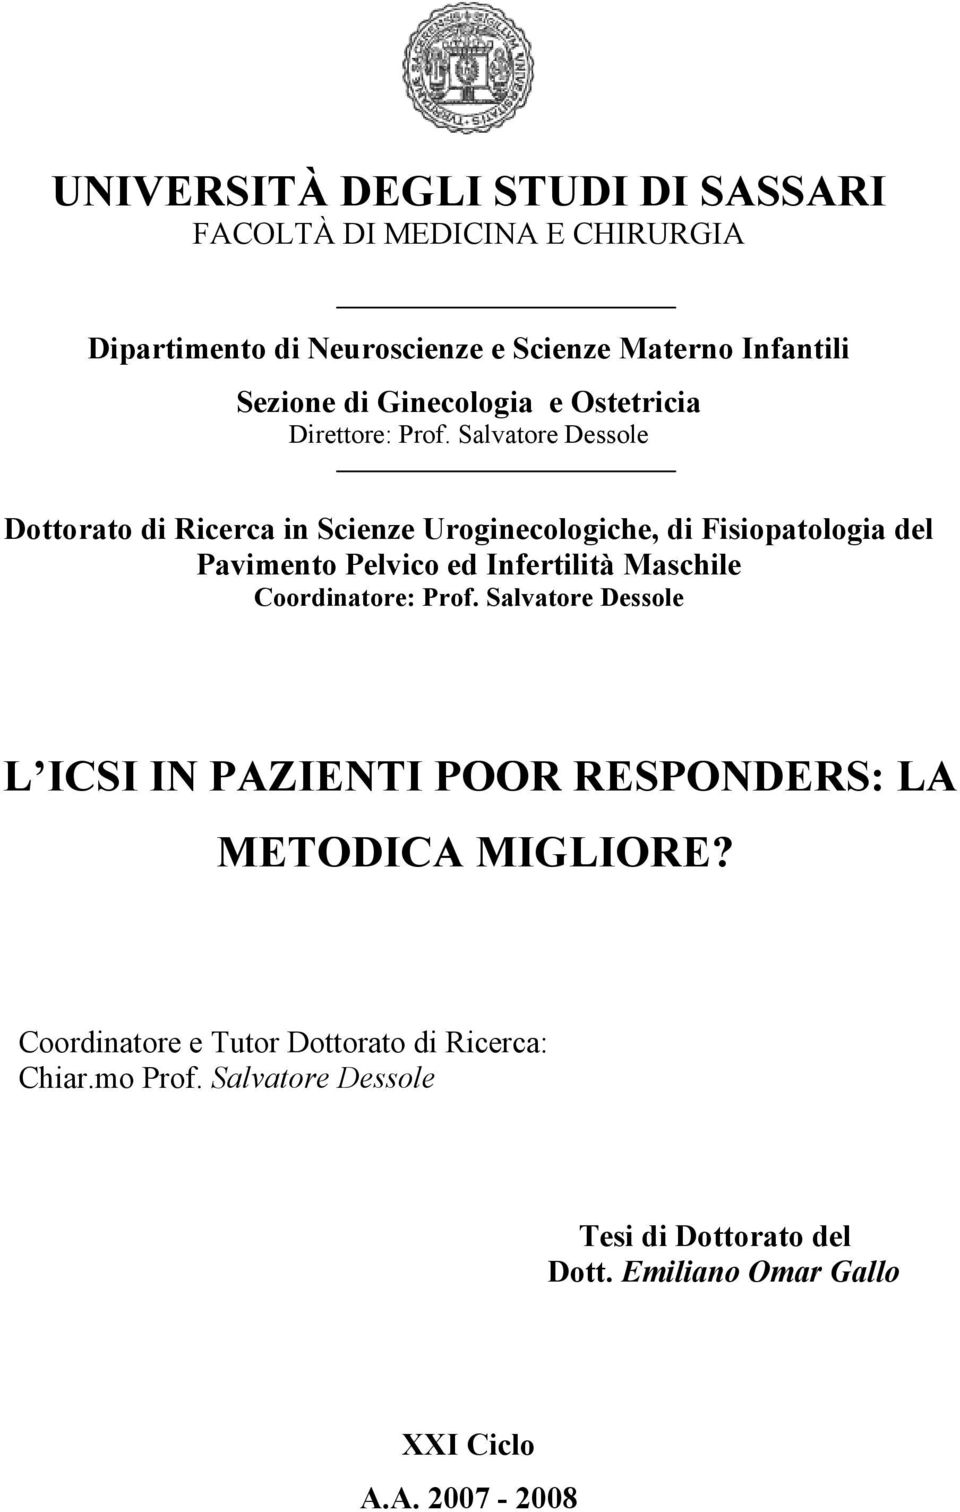 Salvatore Dessole Dottorato di Ricerca in Scienze Uroginecologiche, di Fisiopatologia del Pavimento Pelvico ed Infertilità Maschile